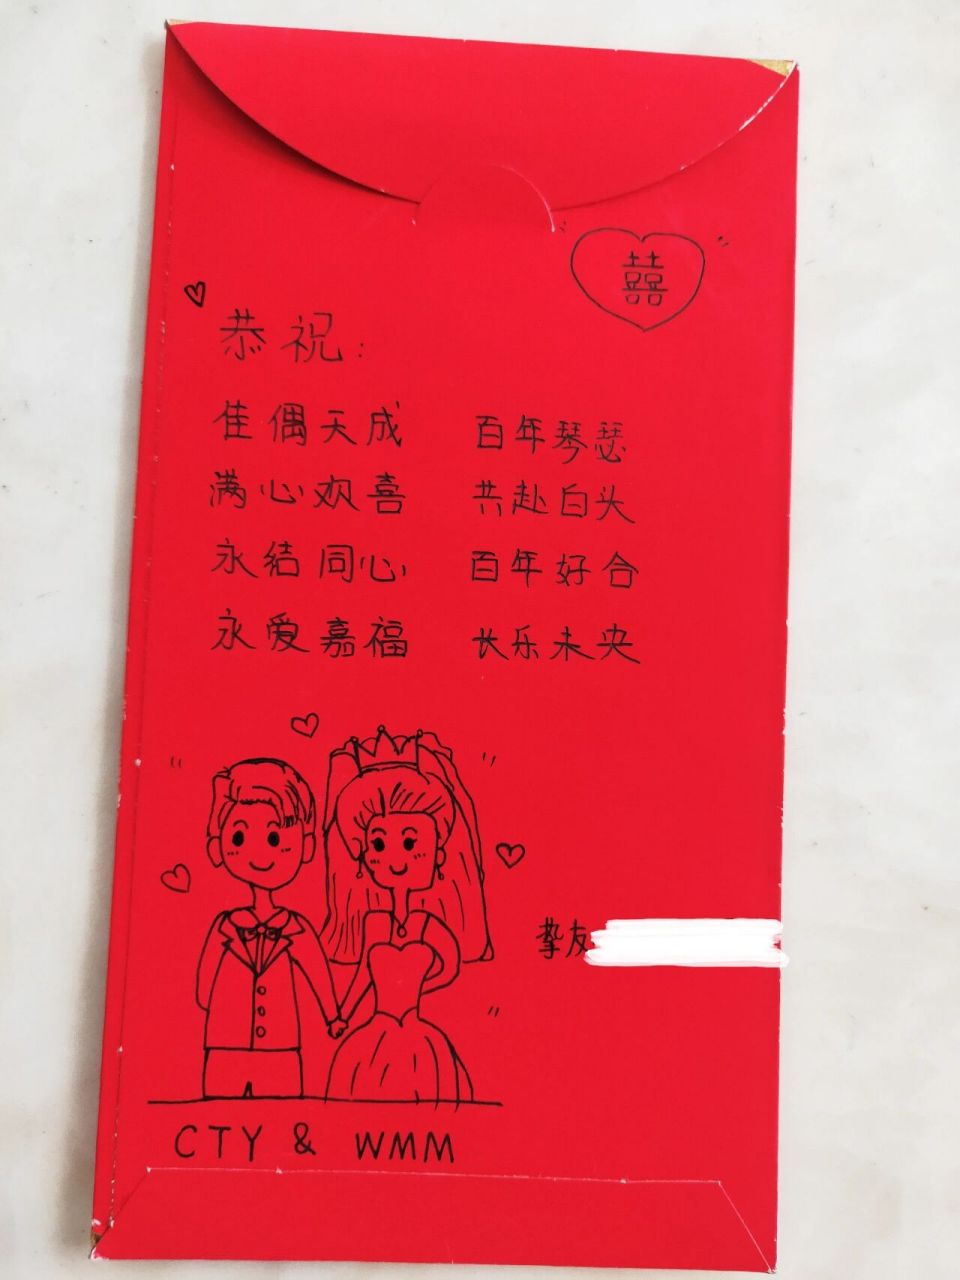 结婚红包祝福语 手写图片